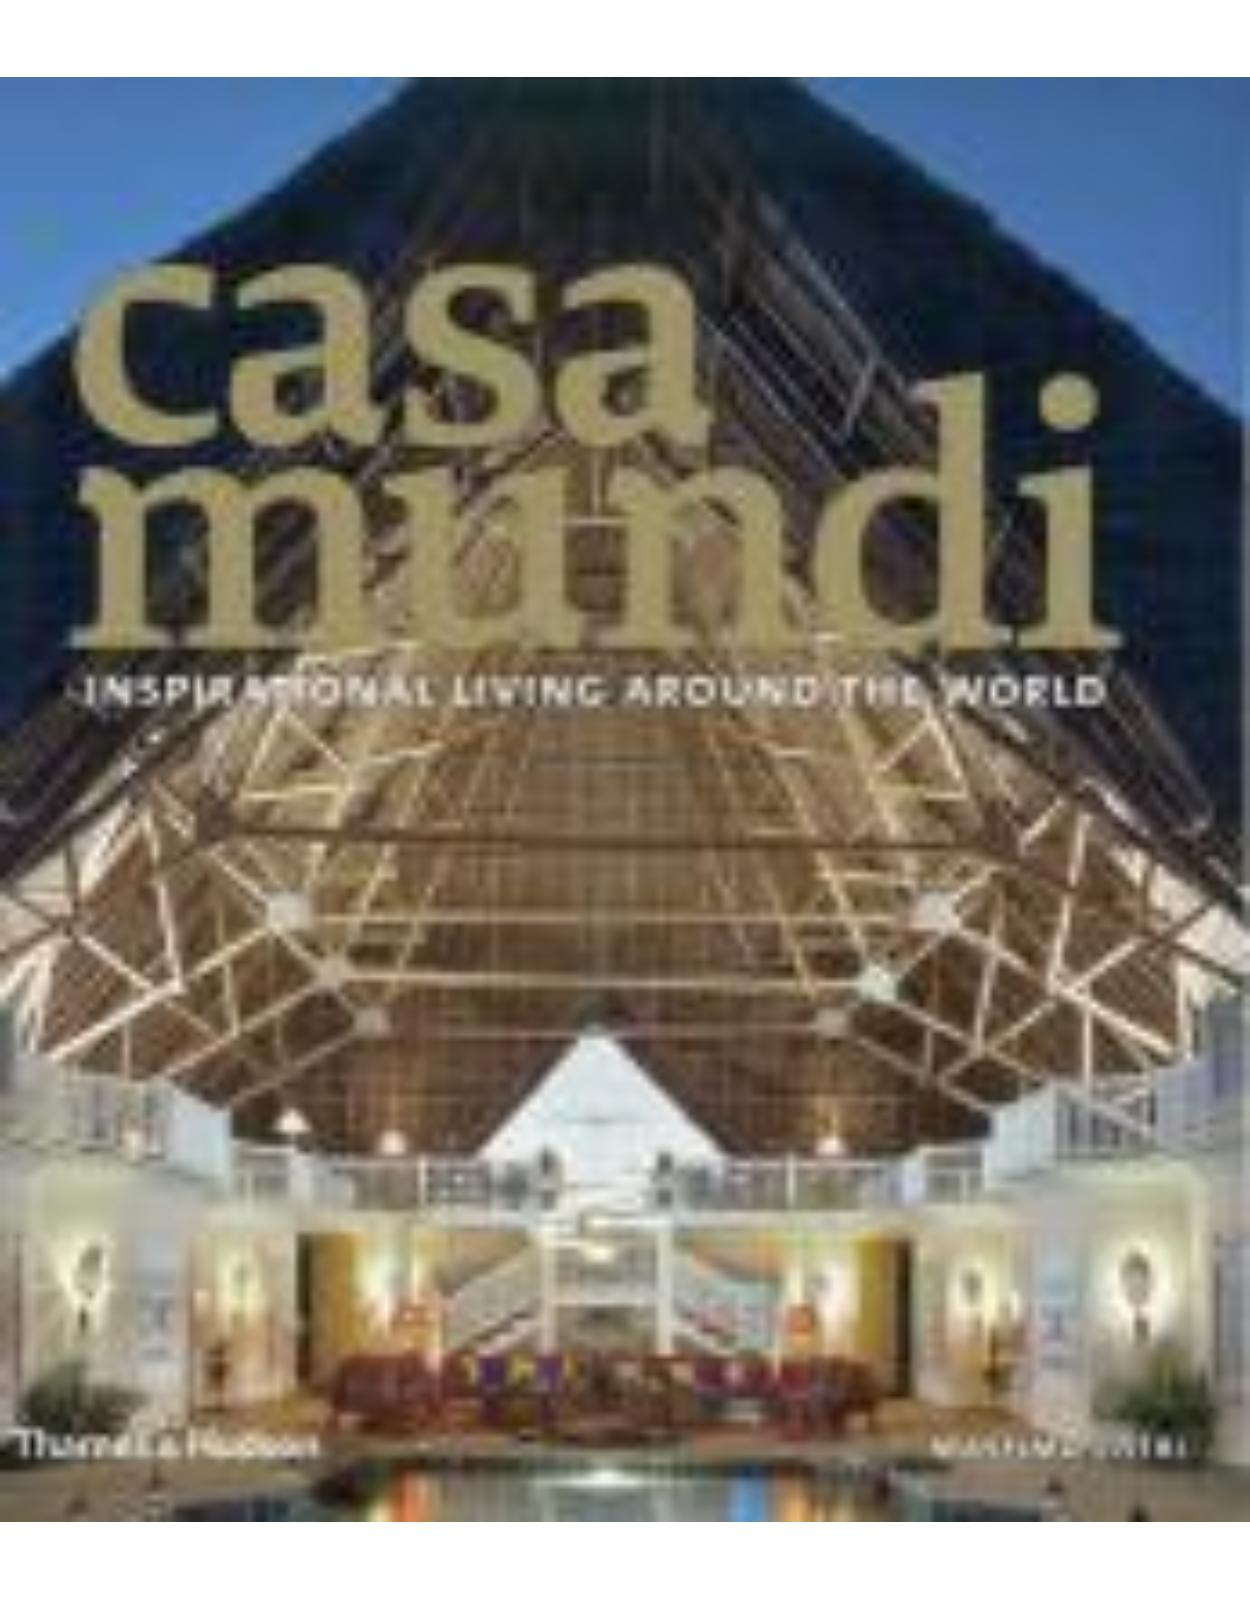 Casa Mundi: Inspirational Living Around the World